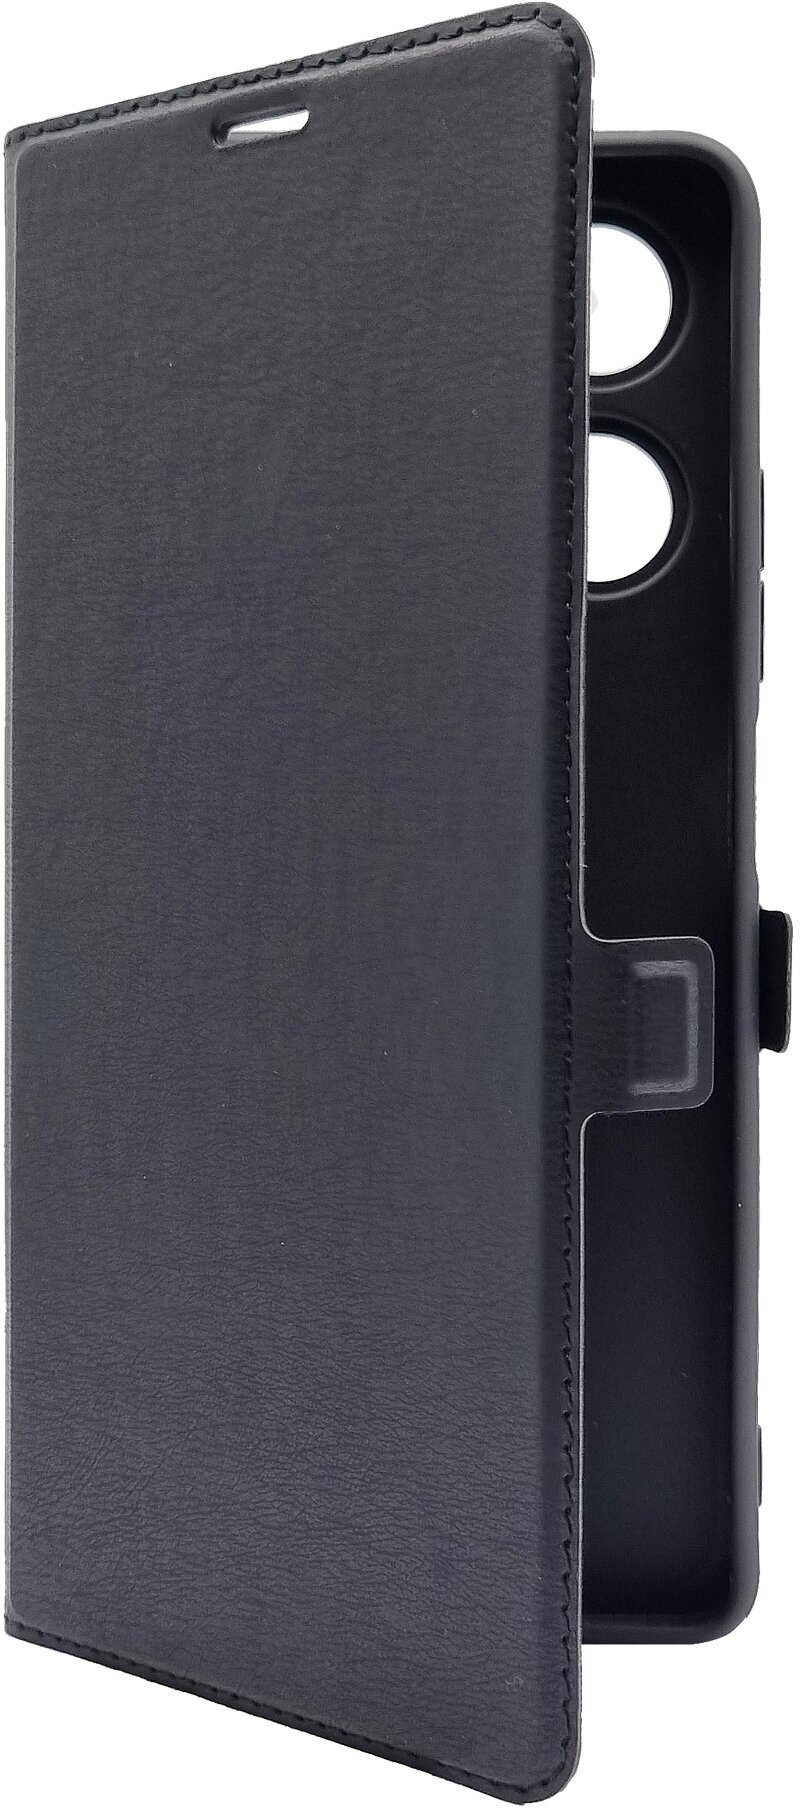 Чехол на Infinix HOT 30 (Инфиникс Хот 30) черный книжка эко-кожа с функцией подставки отделением для пластиковых карт и магнитами Book case, Brozo